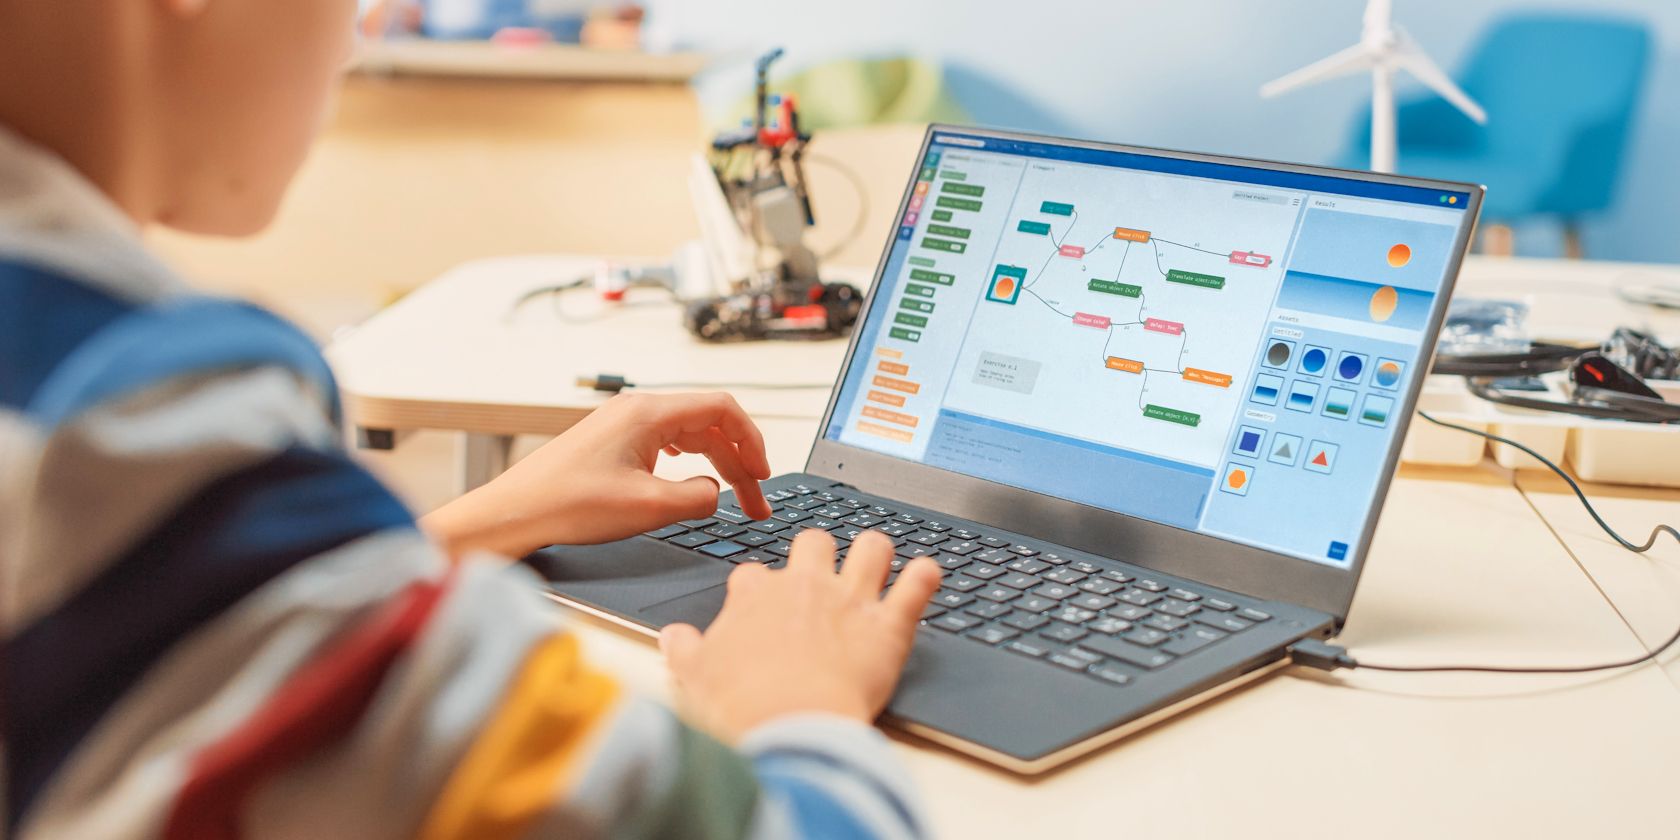 یادگیری برنامه نویسی کودک در لپ تاپ